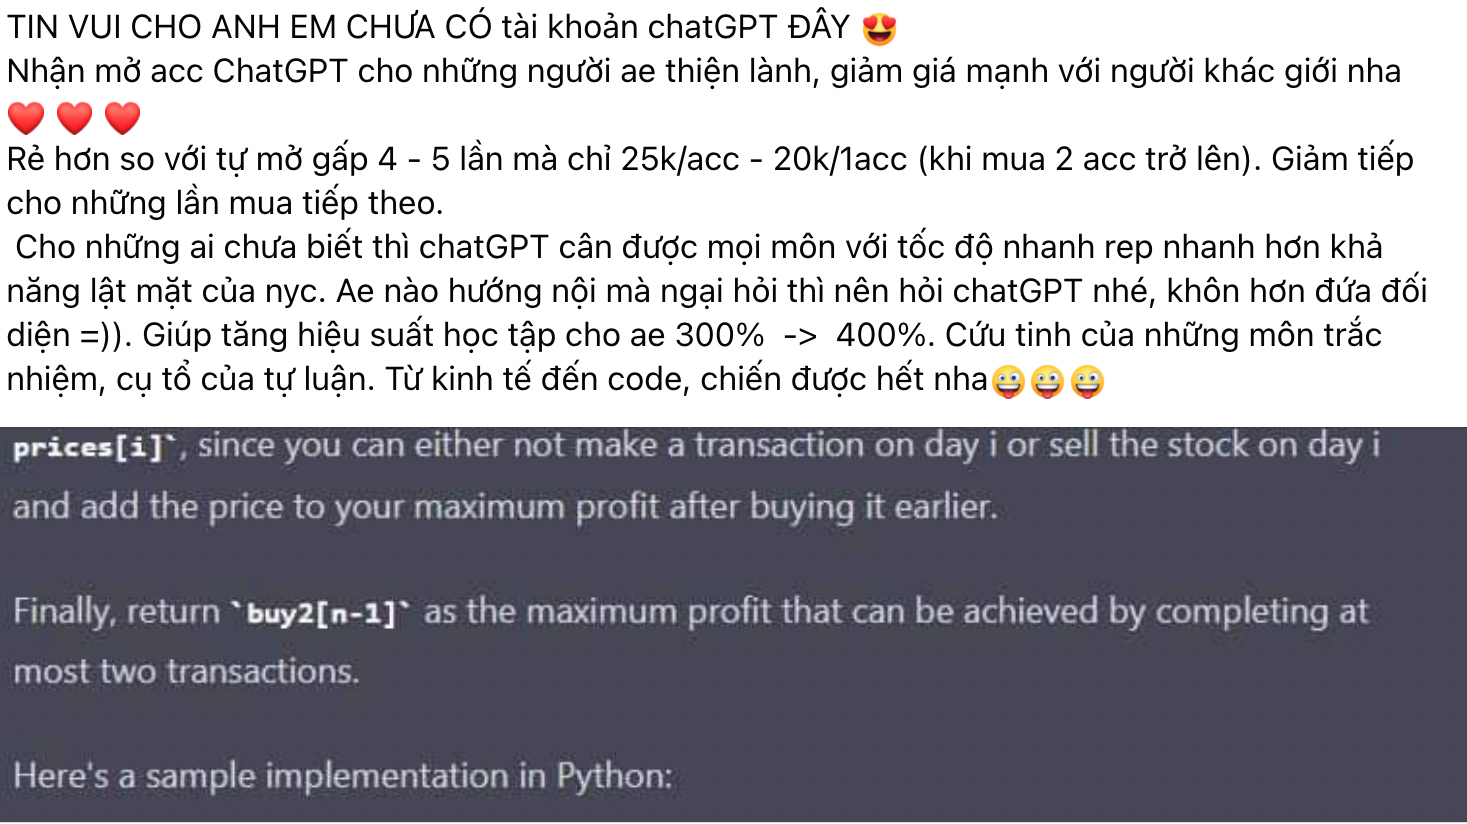 Chưa về đến Việt Nam, tài khoản ChatGPT đã được rao bán tràn 'chợ mạng' - 1